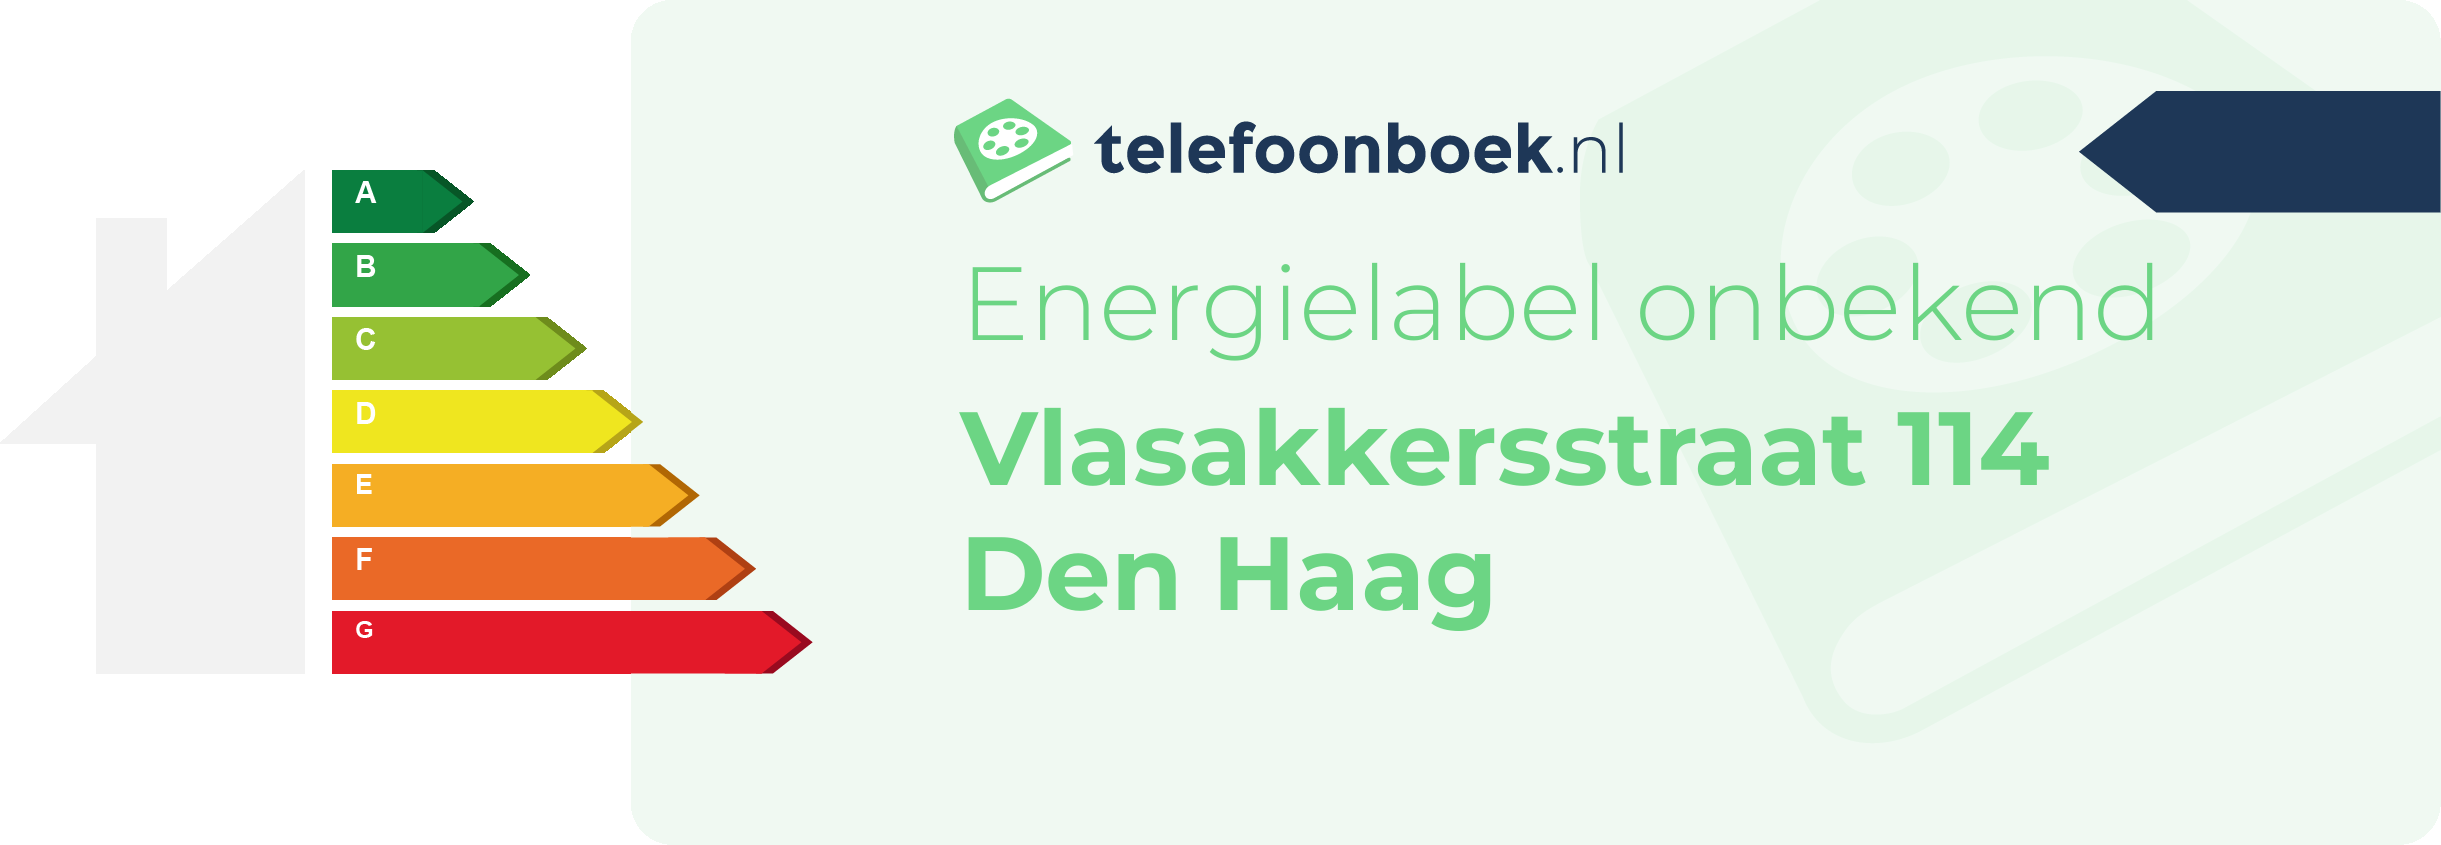 Energielabel Vlasakkersstraat 114 Den Haag